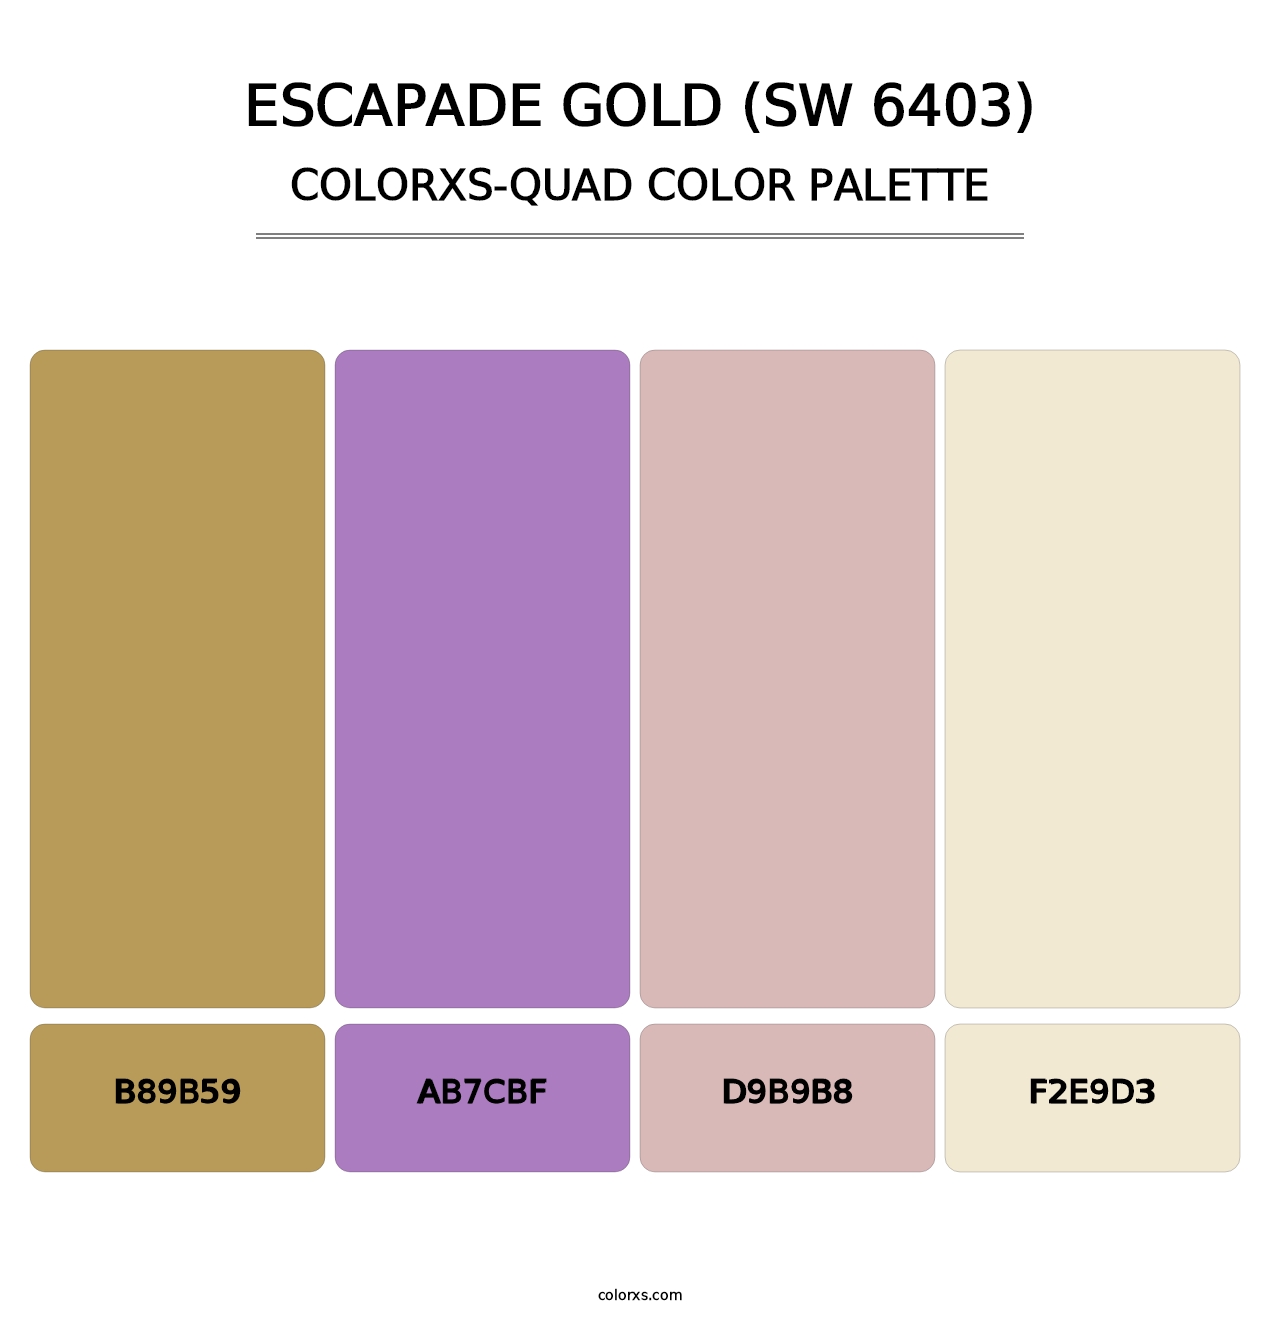 Escapade Gold (SW 6403) - Colorxs Quad Palette